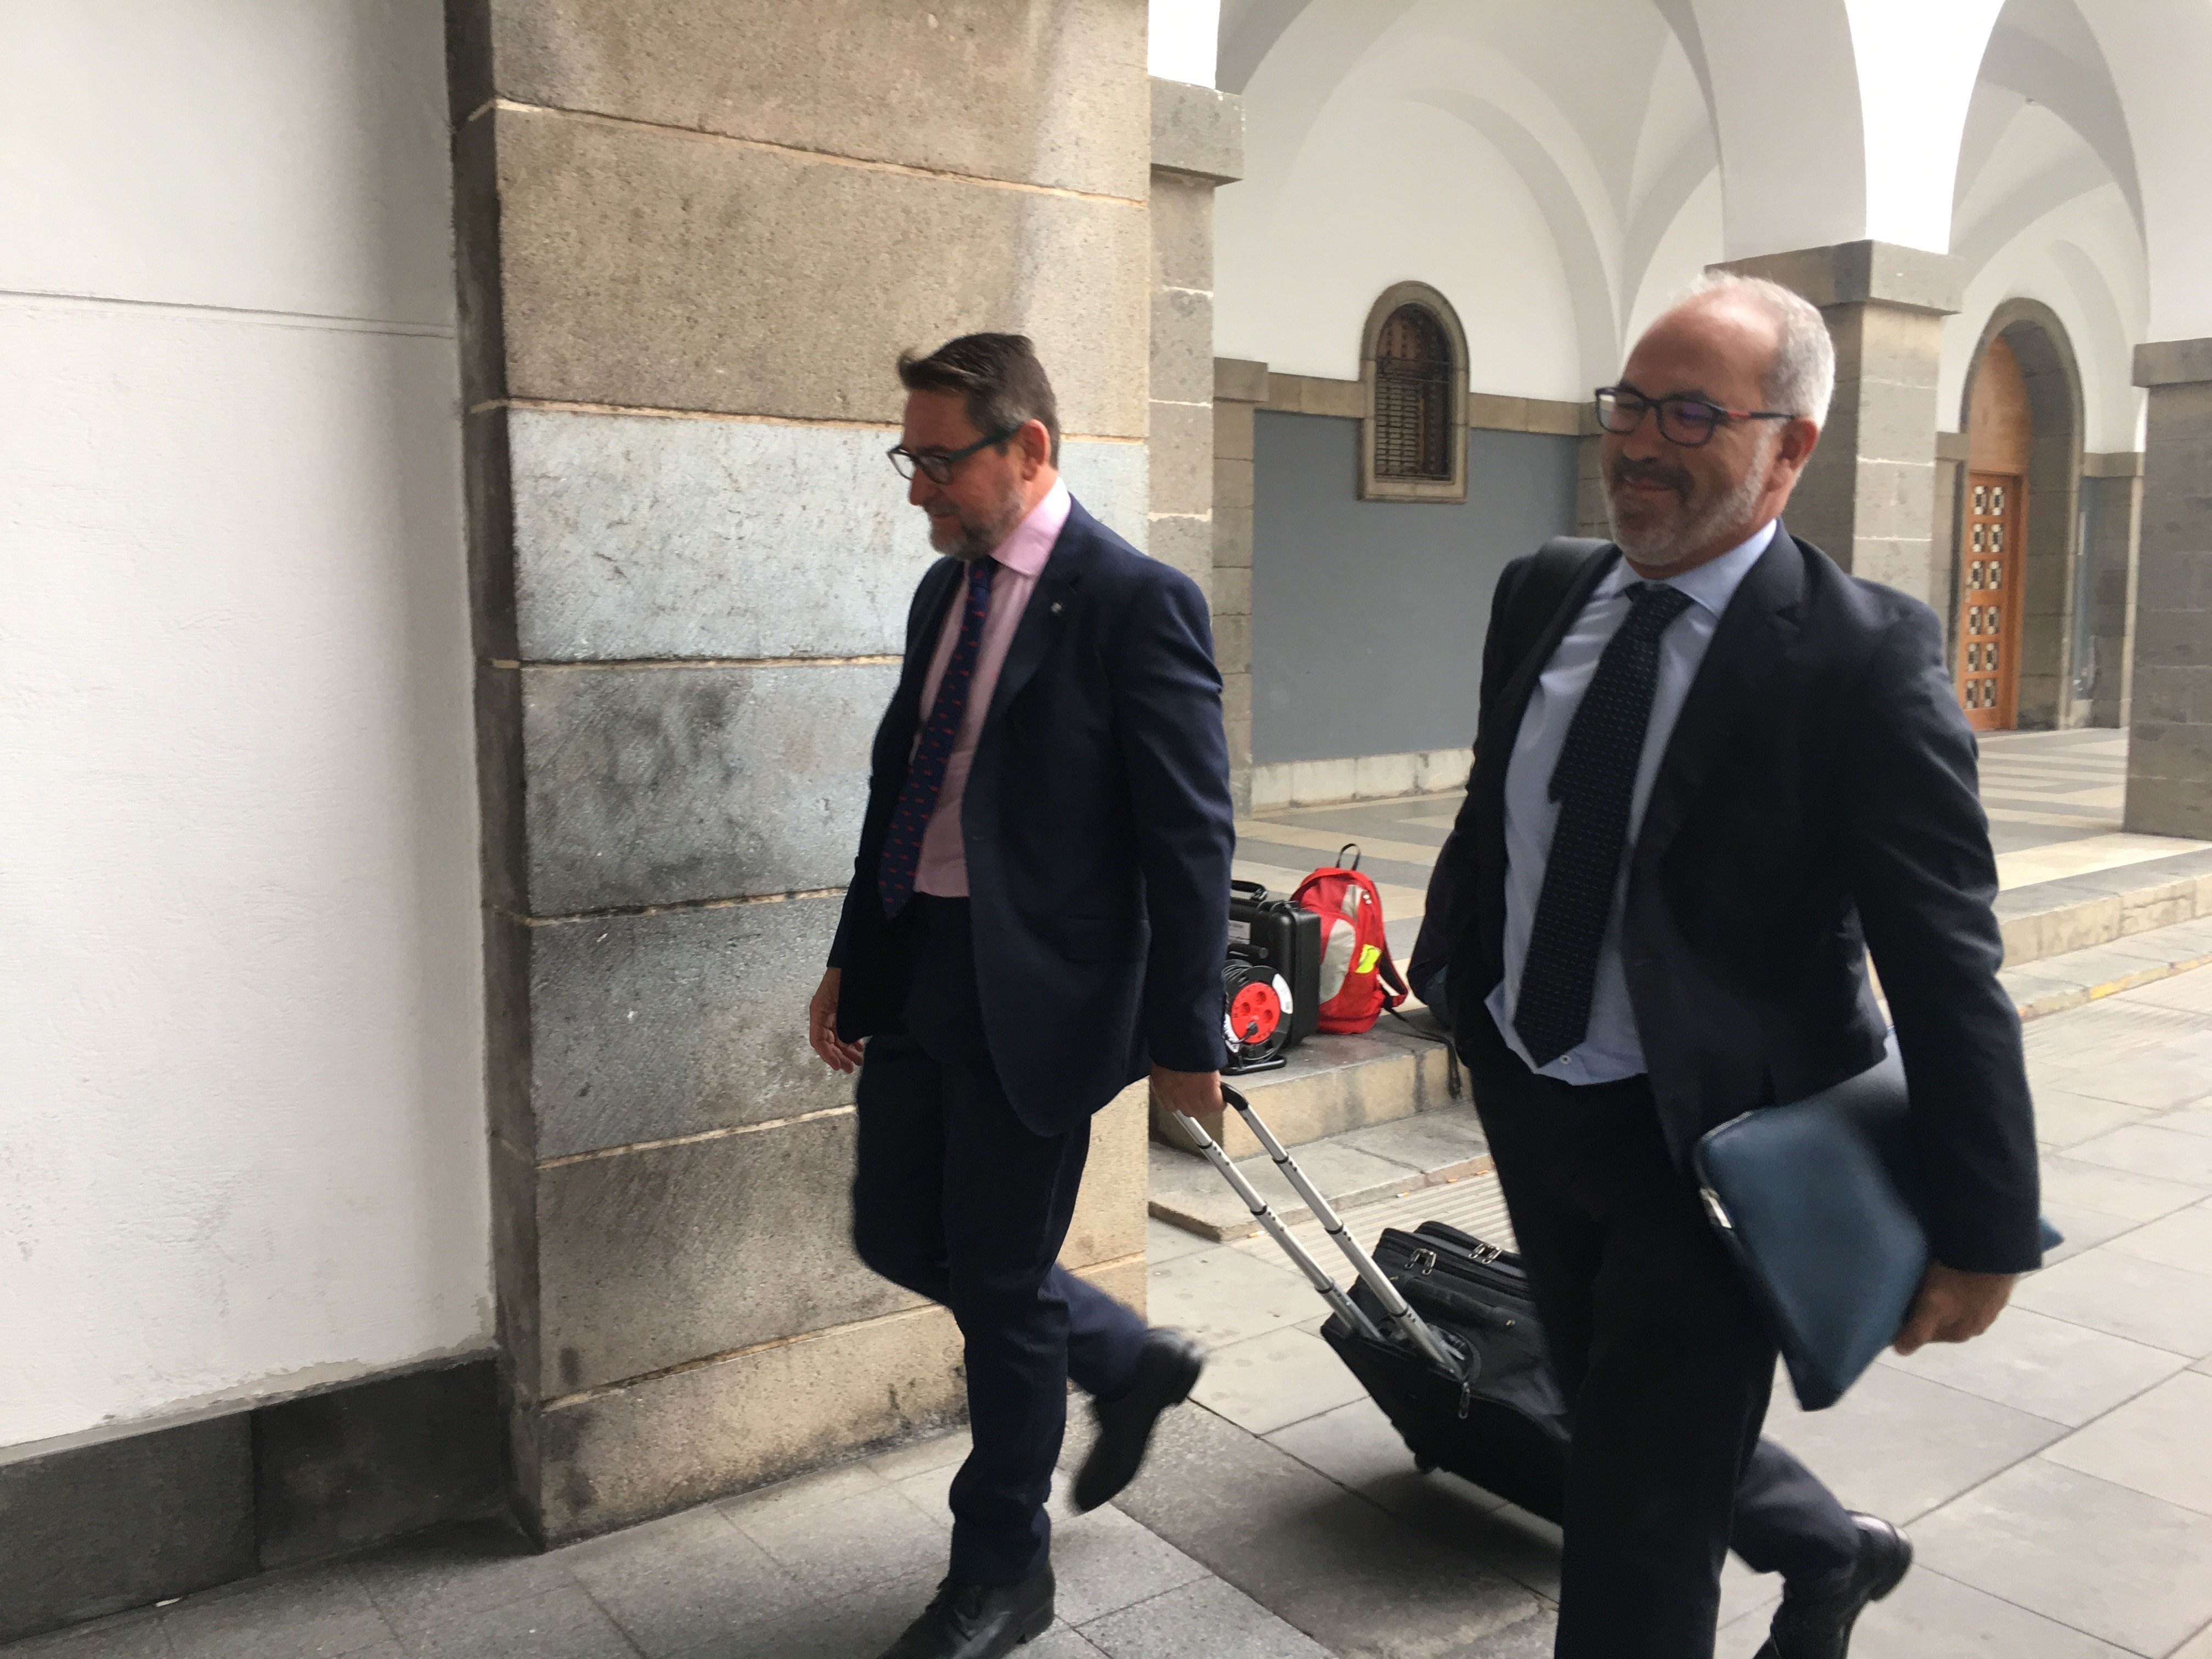 El exjuez Alba recusa al presidente del Tribunal Superior de Canarias por tener "prisa" por enviarlo a prisión